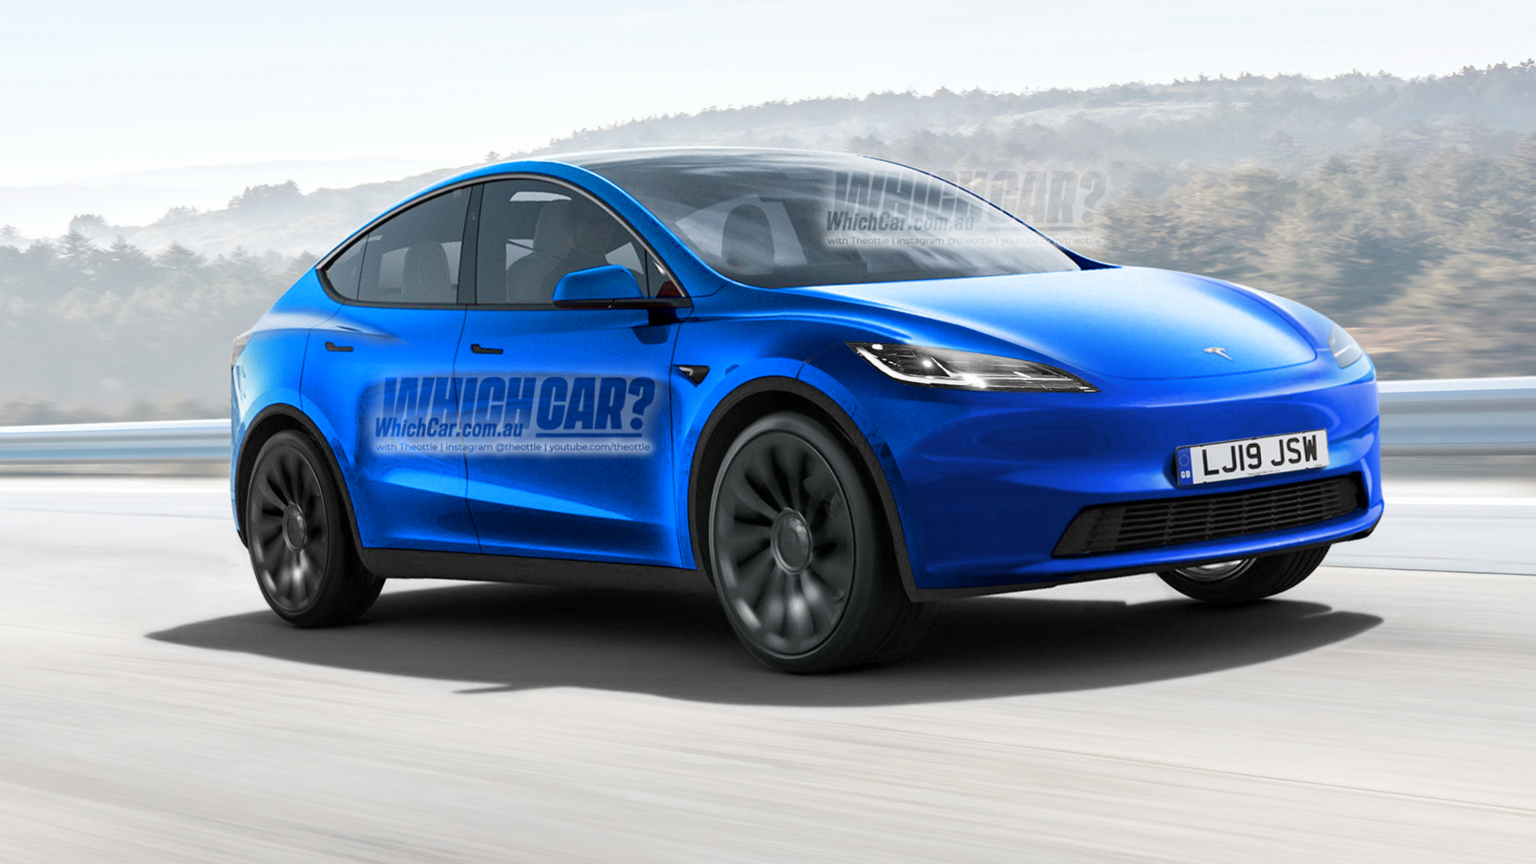 Standard-Range Tesla Model Y With RWD is Back, Starts Under $60K